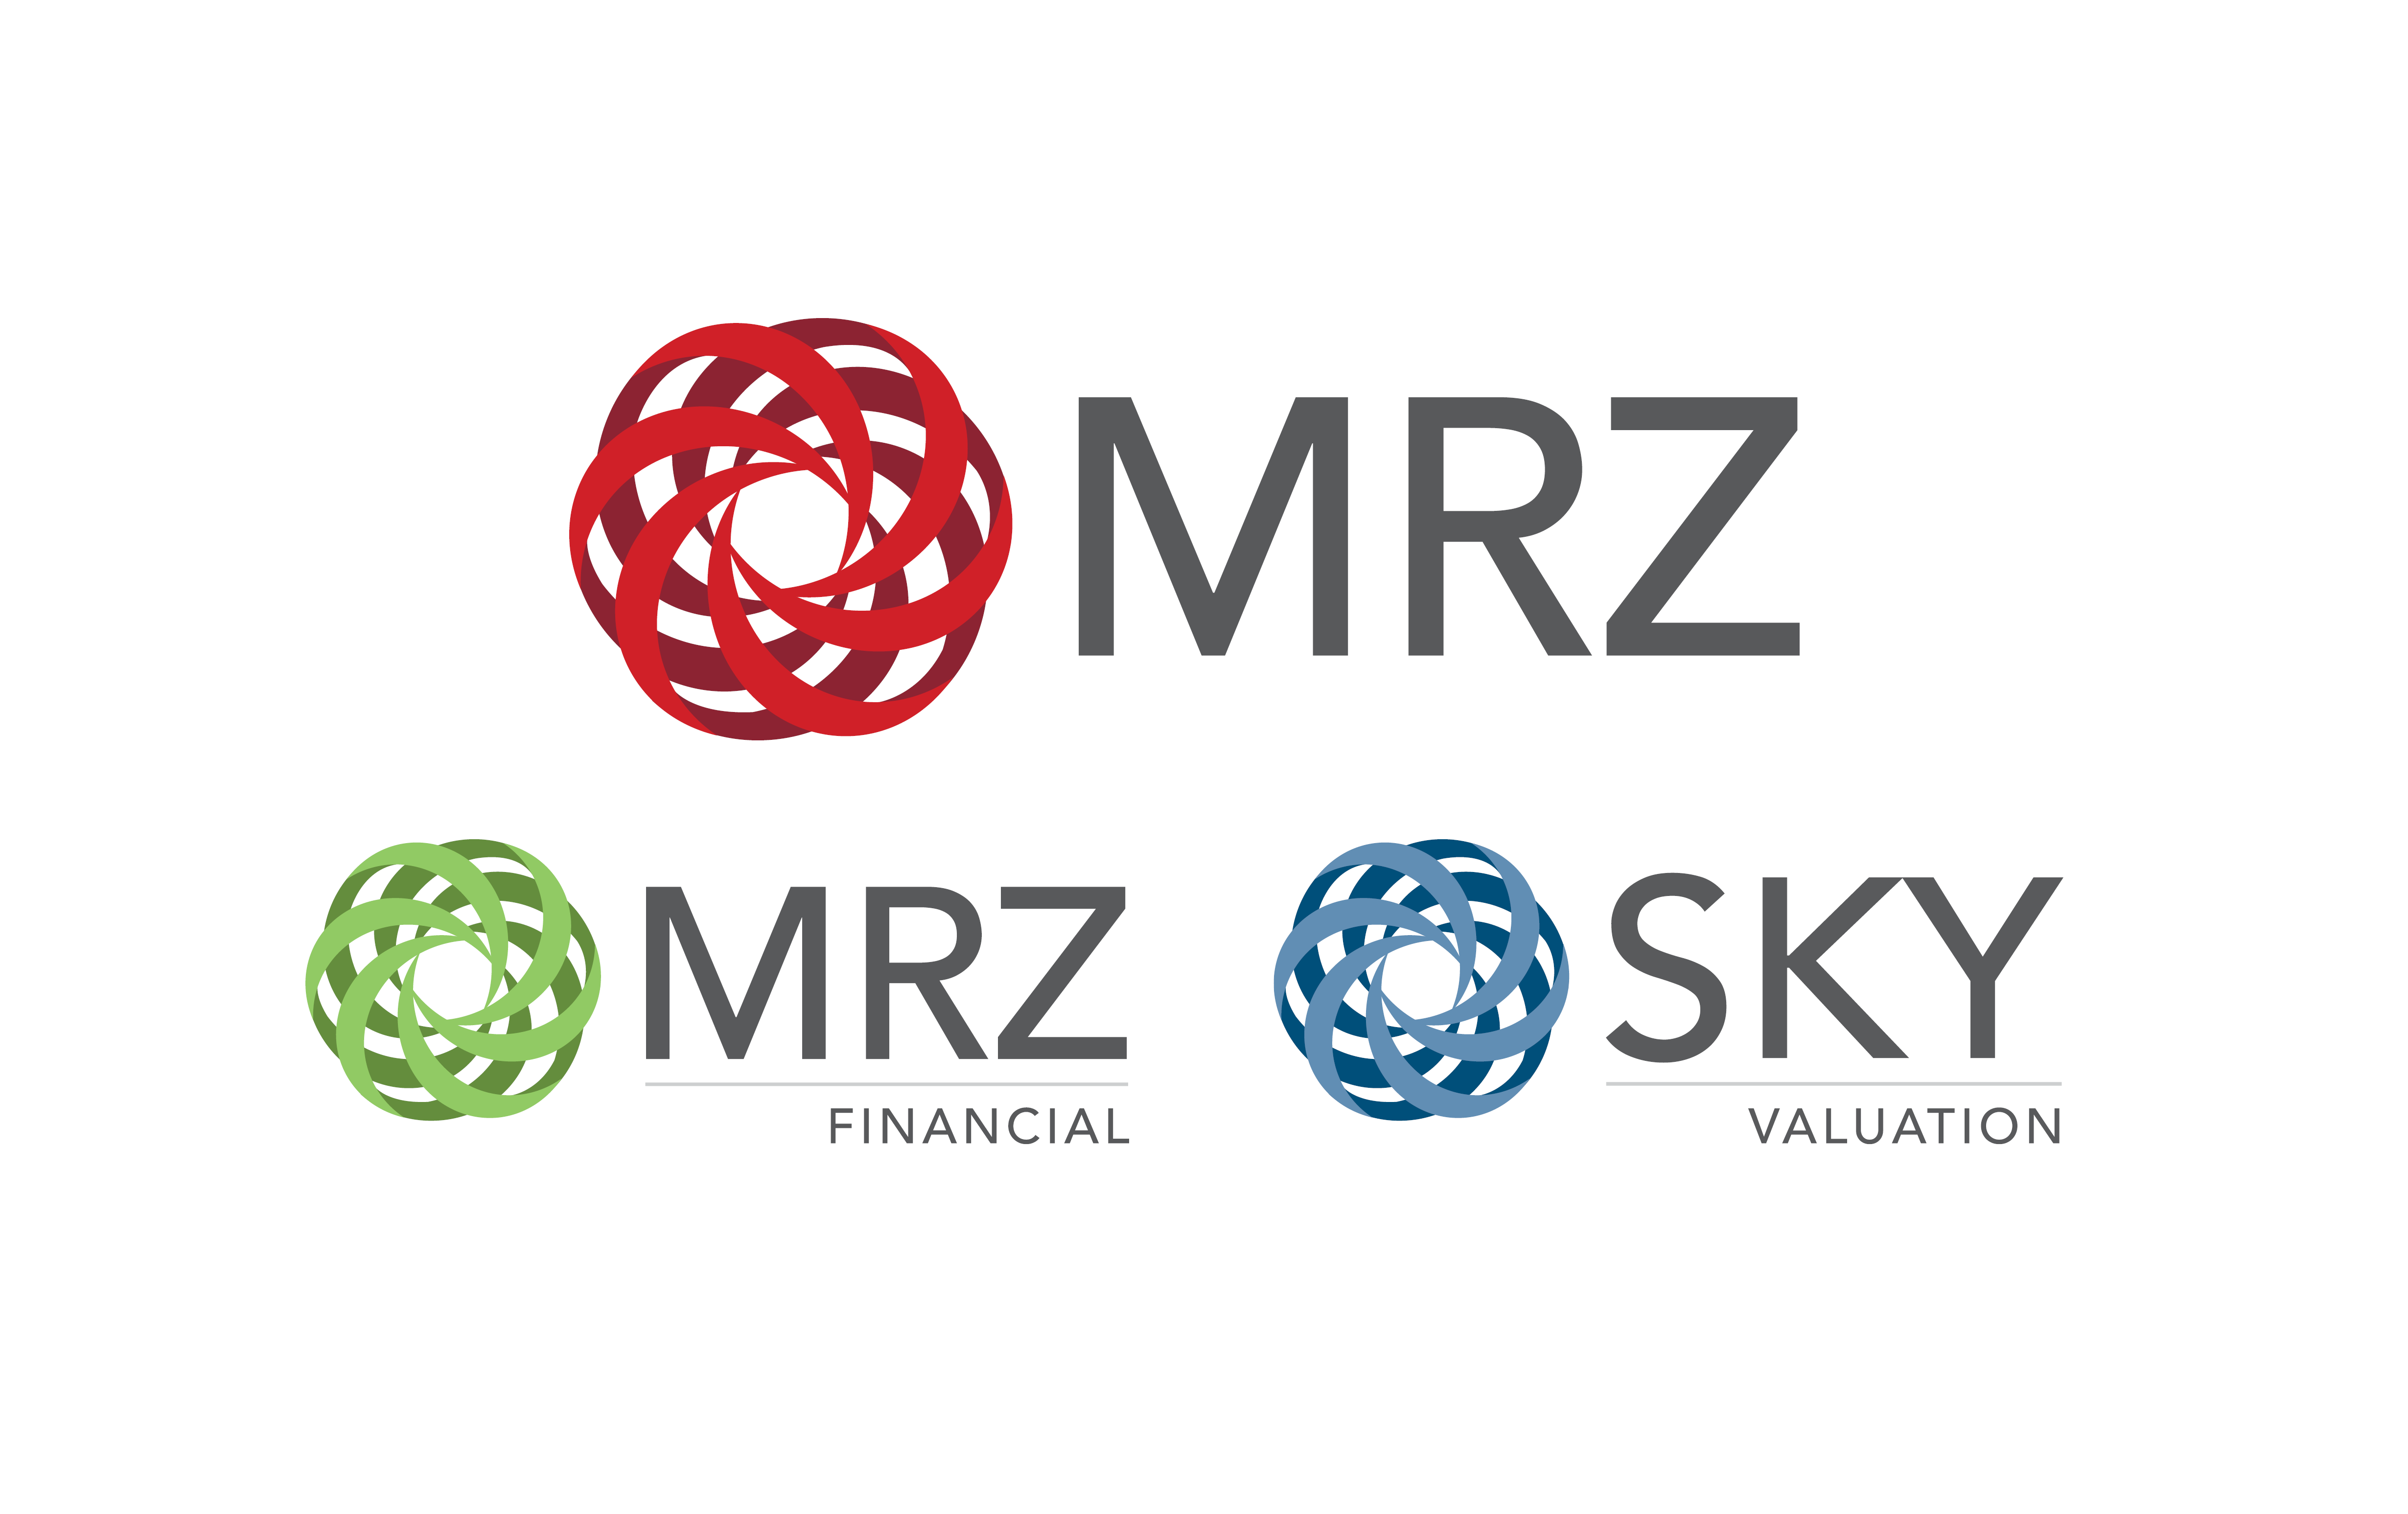 mrz-mrz financial-sky valuation